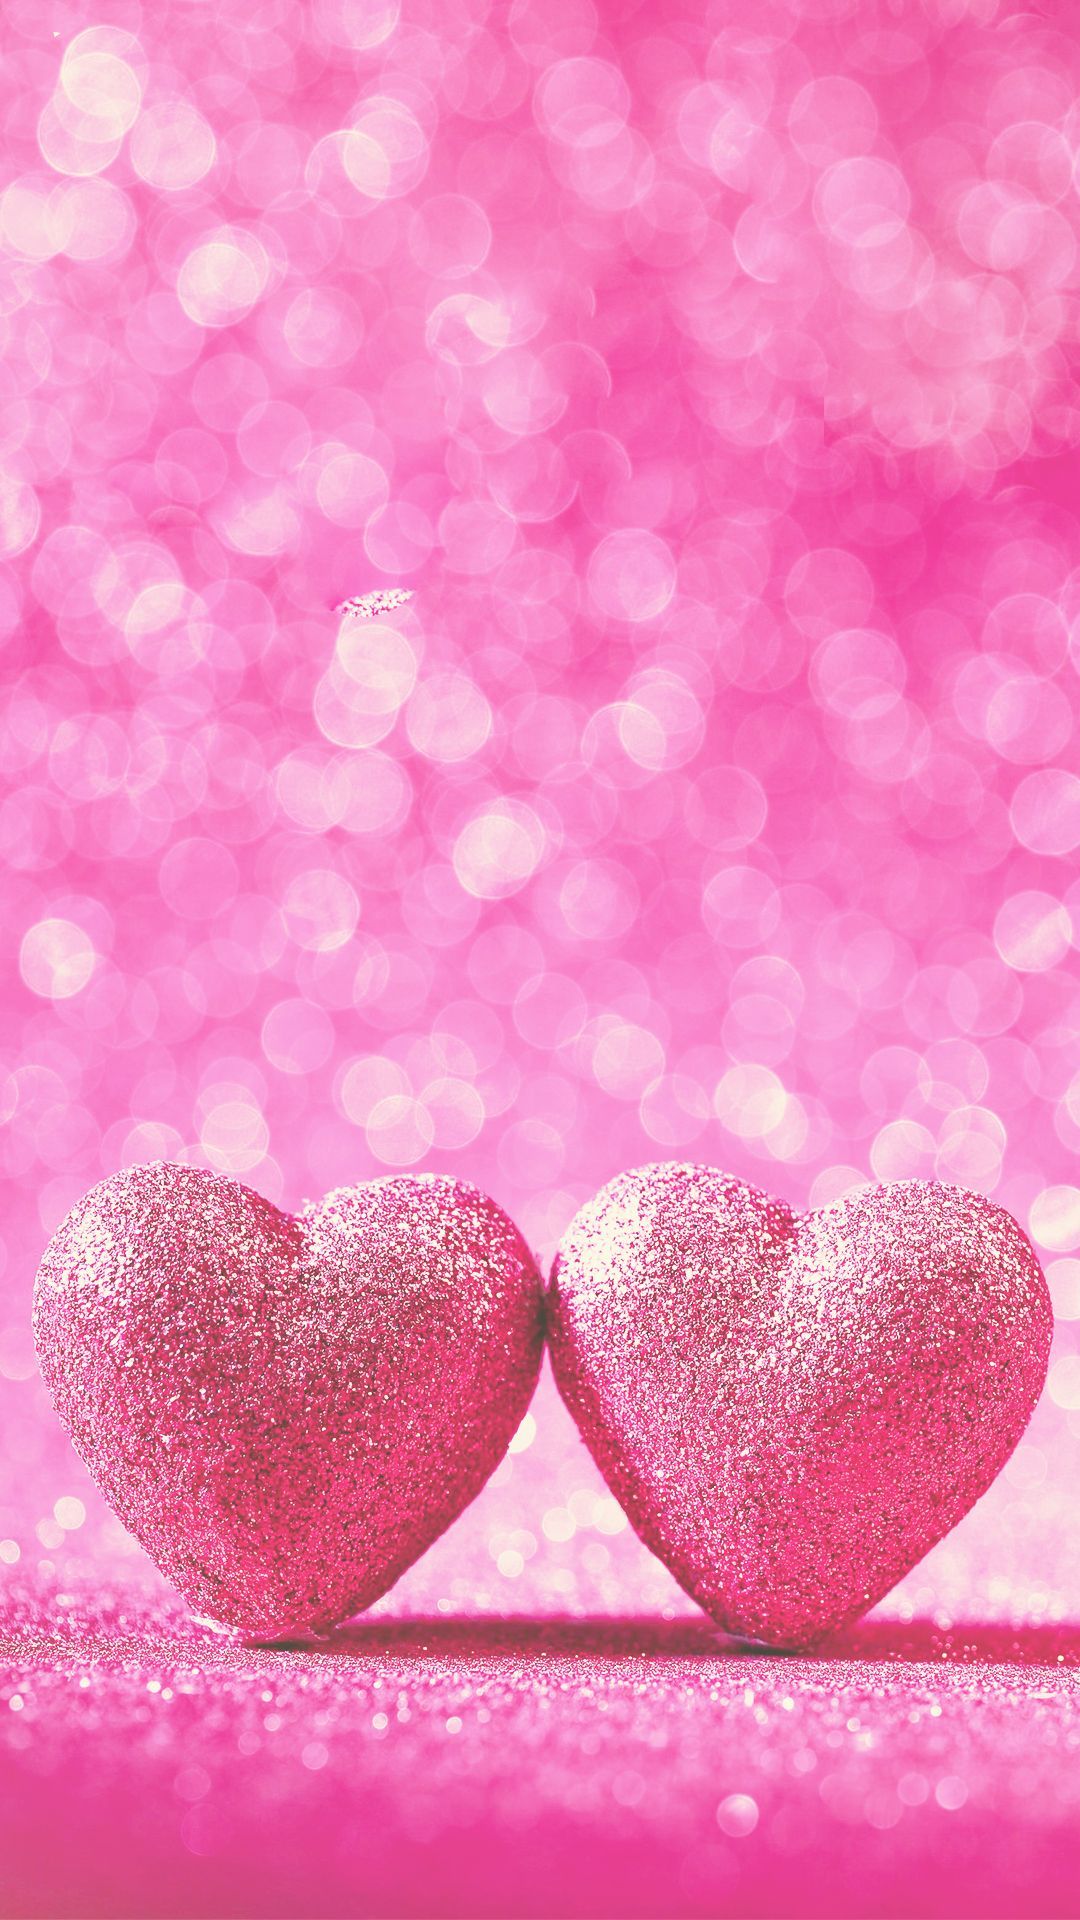 Hình nền iPhone hình trái tim màu hồng thật sự quá đẹp và dễ thương. Bạn sẽ không tìm thấy được một hình nền nào đẹp hơn và ý nghĩa hơn cho ngày Valentine hay sinh nhật của người thân. Tải ngay hình nền này và trở thành nguồn cảm hứng cho những bức ảnh tuyệt đẹp nhất của bạn!